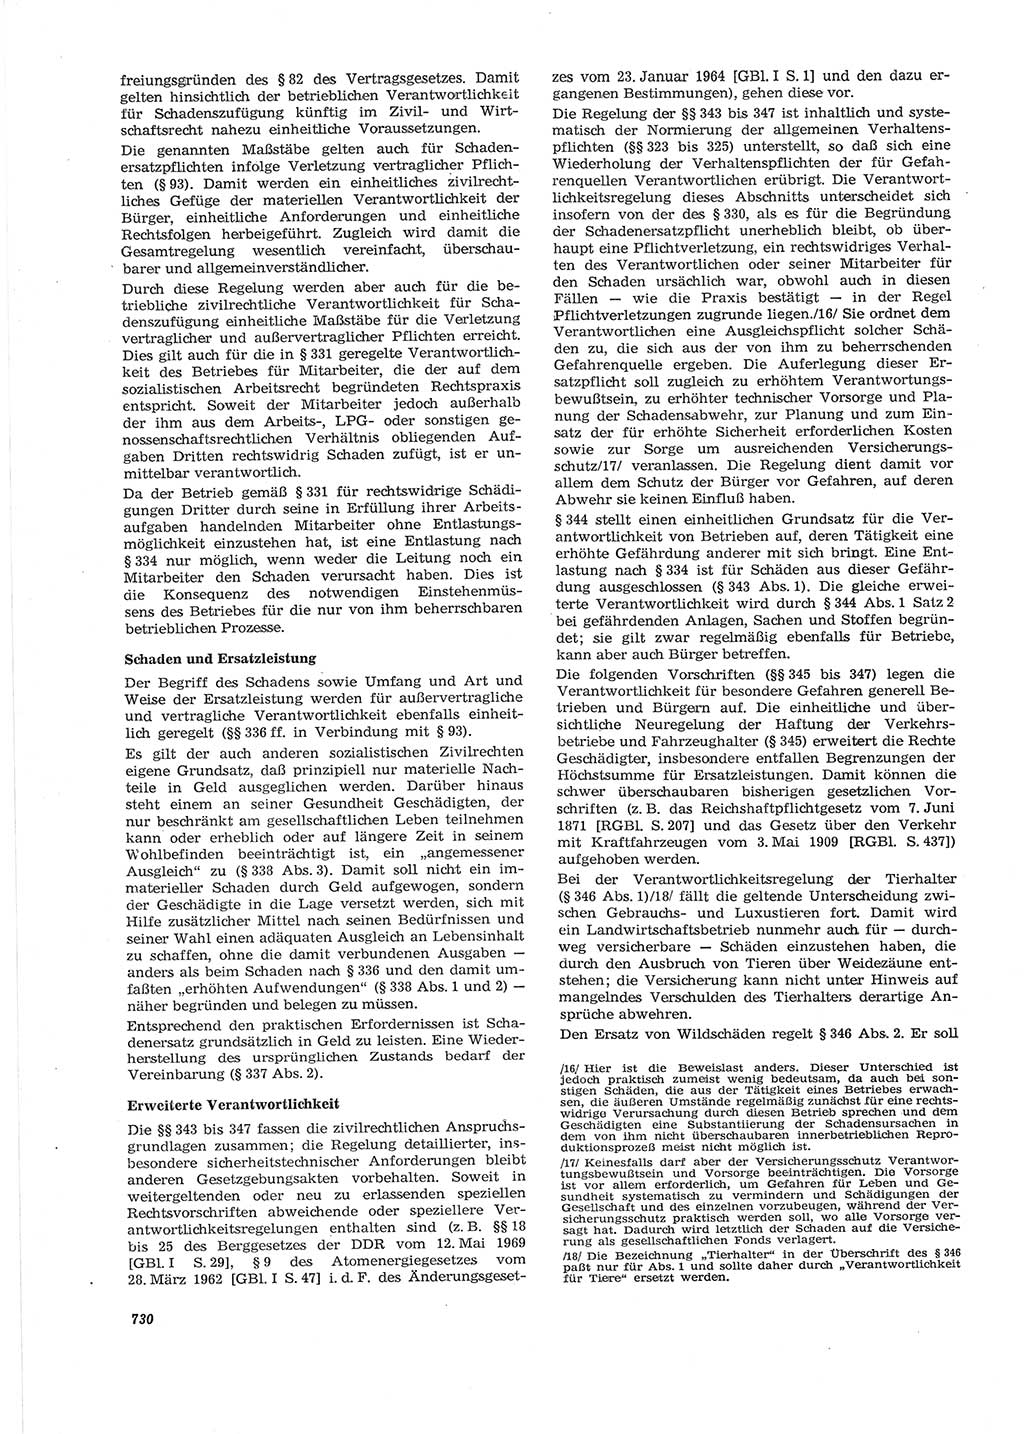 Neue Justiz (NJ), Zeitschrift für Recht und Rechtswissenschaft [Deutsche Demokratische Republik (DDR)], 28. Jahrgang 1974, Seite 730 (NJ DDR 1974, S. 730)